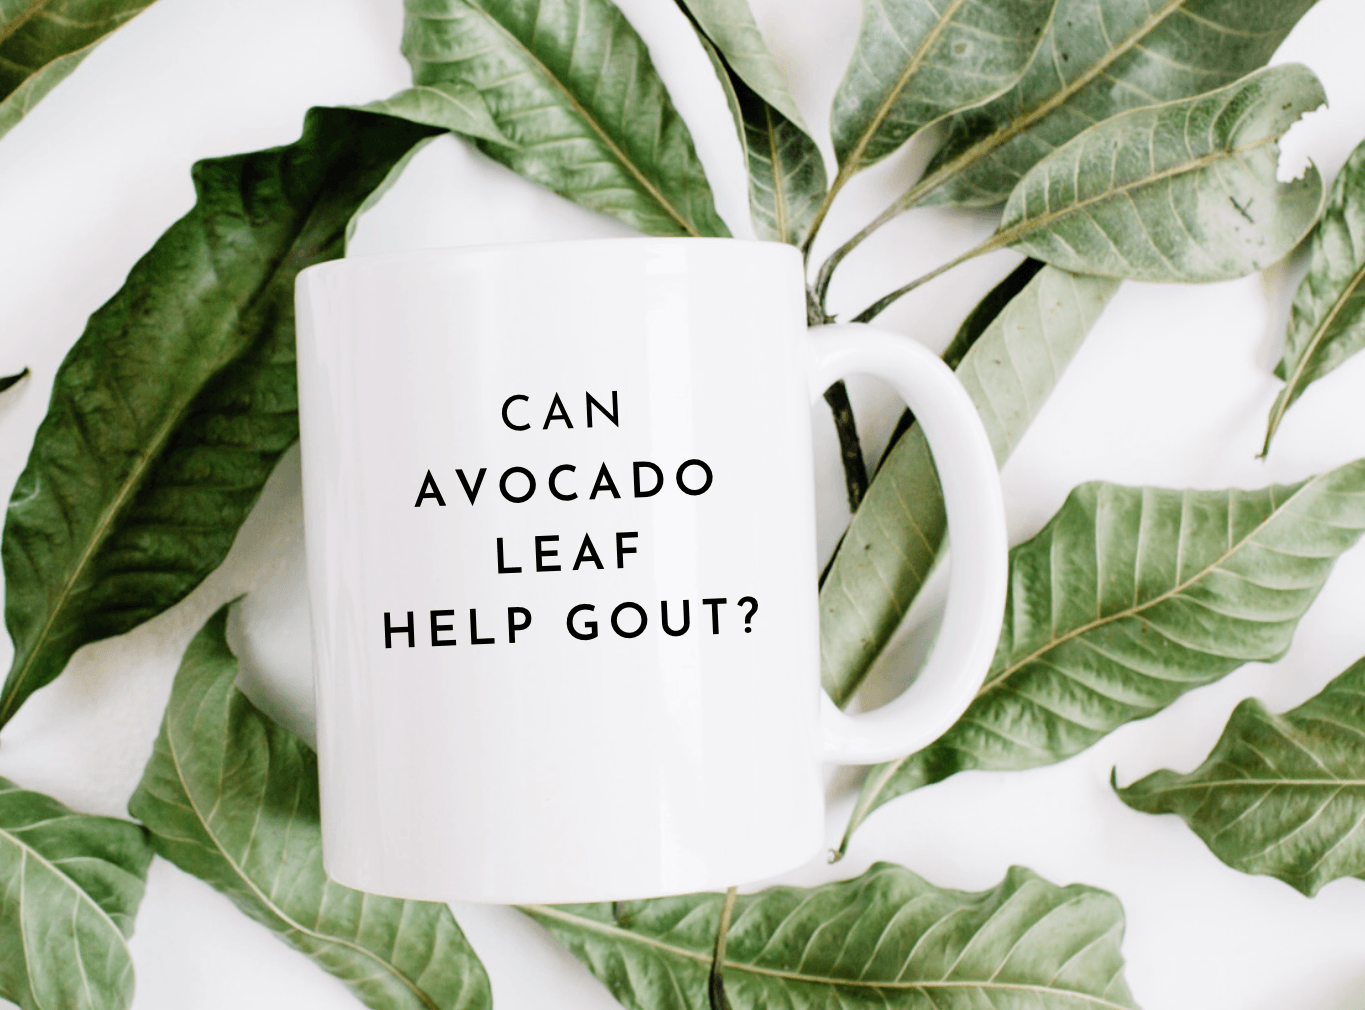 Gout & Avocado Leaf